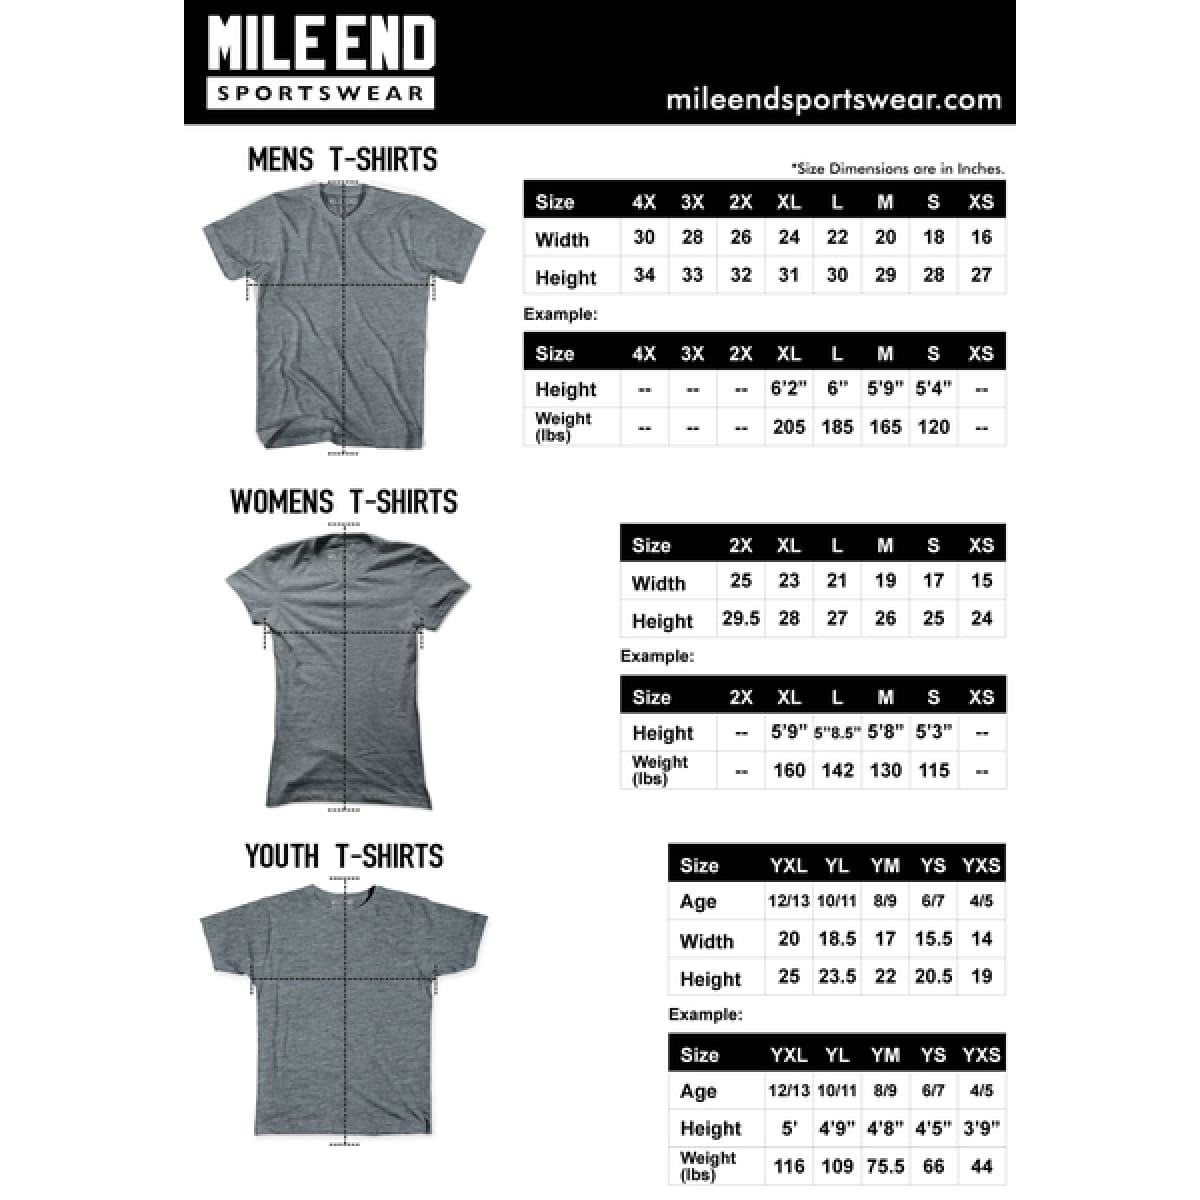 Cape Town Vintage Bike T-shirt for Sale | Mile End Sportswear, Vintage Bike T-shirt, T-Shirt ...